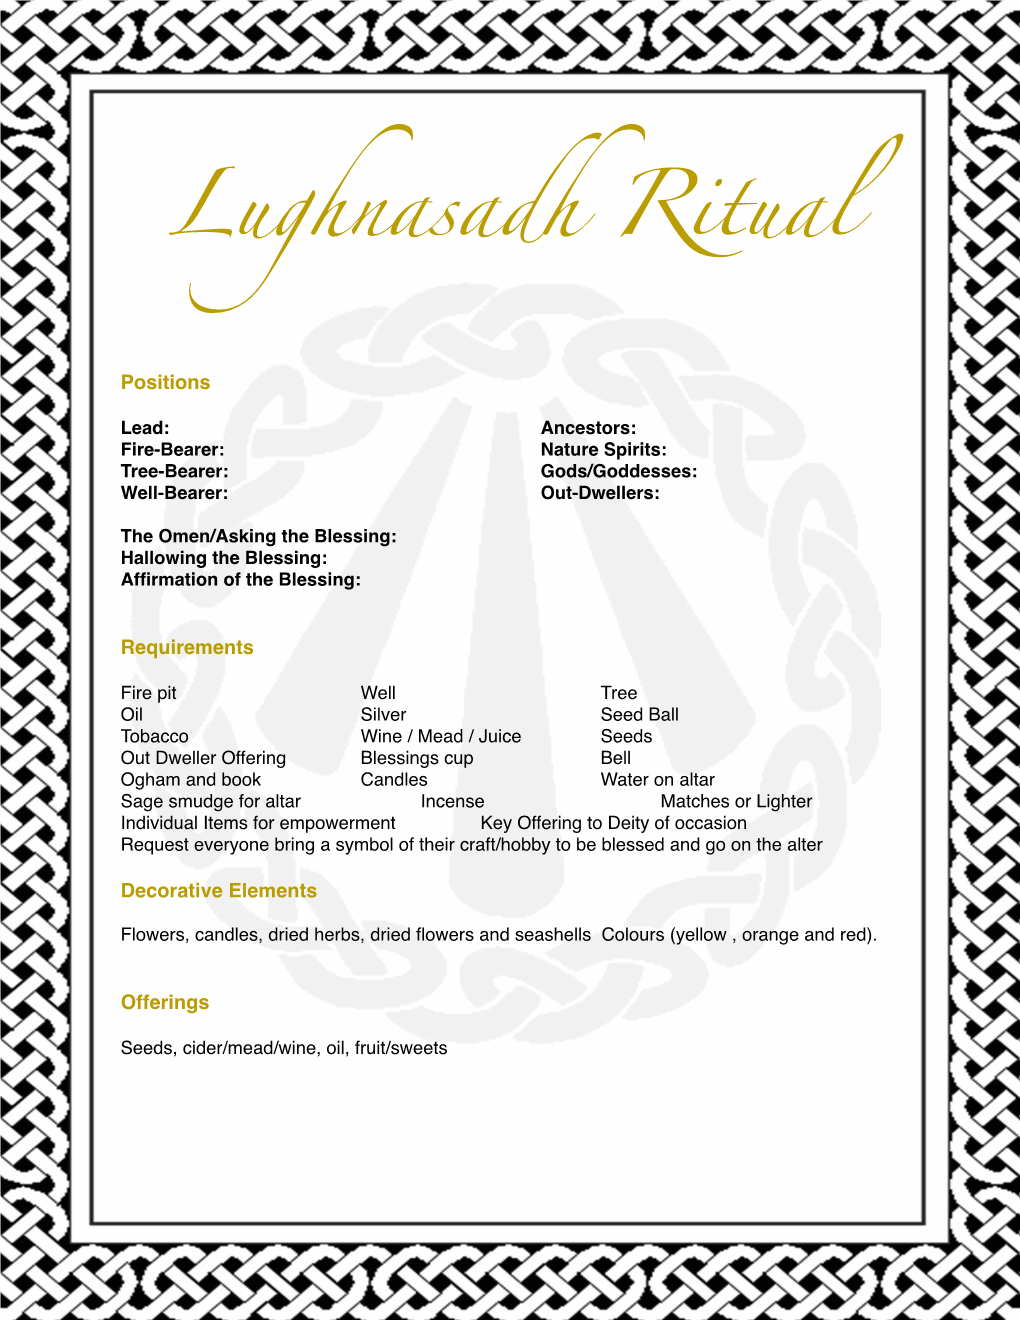 Lughnasadh Ritual